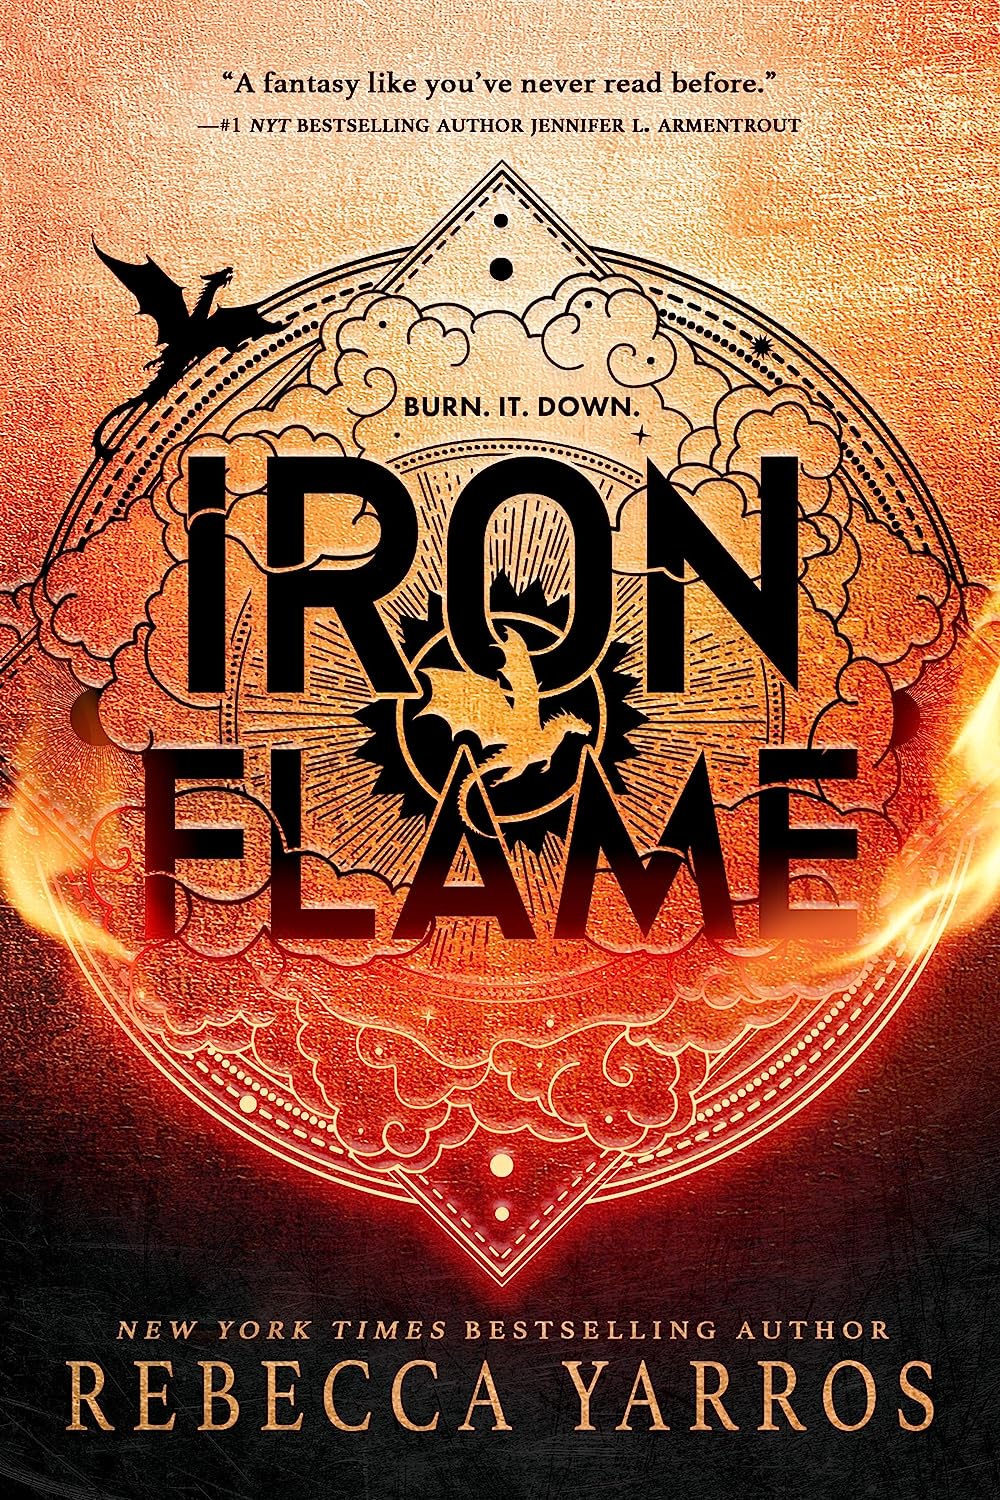 Iron Flame (Empyrean #2)